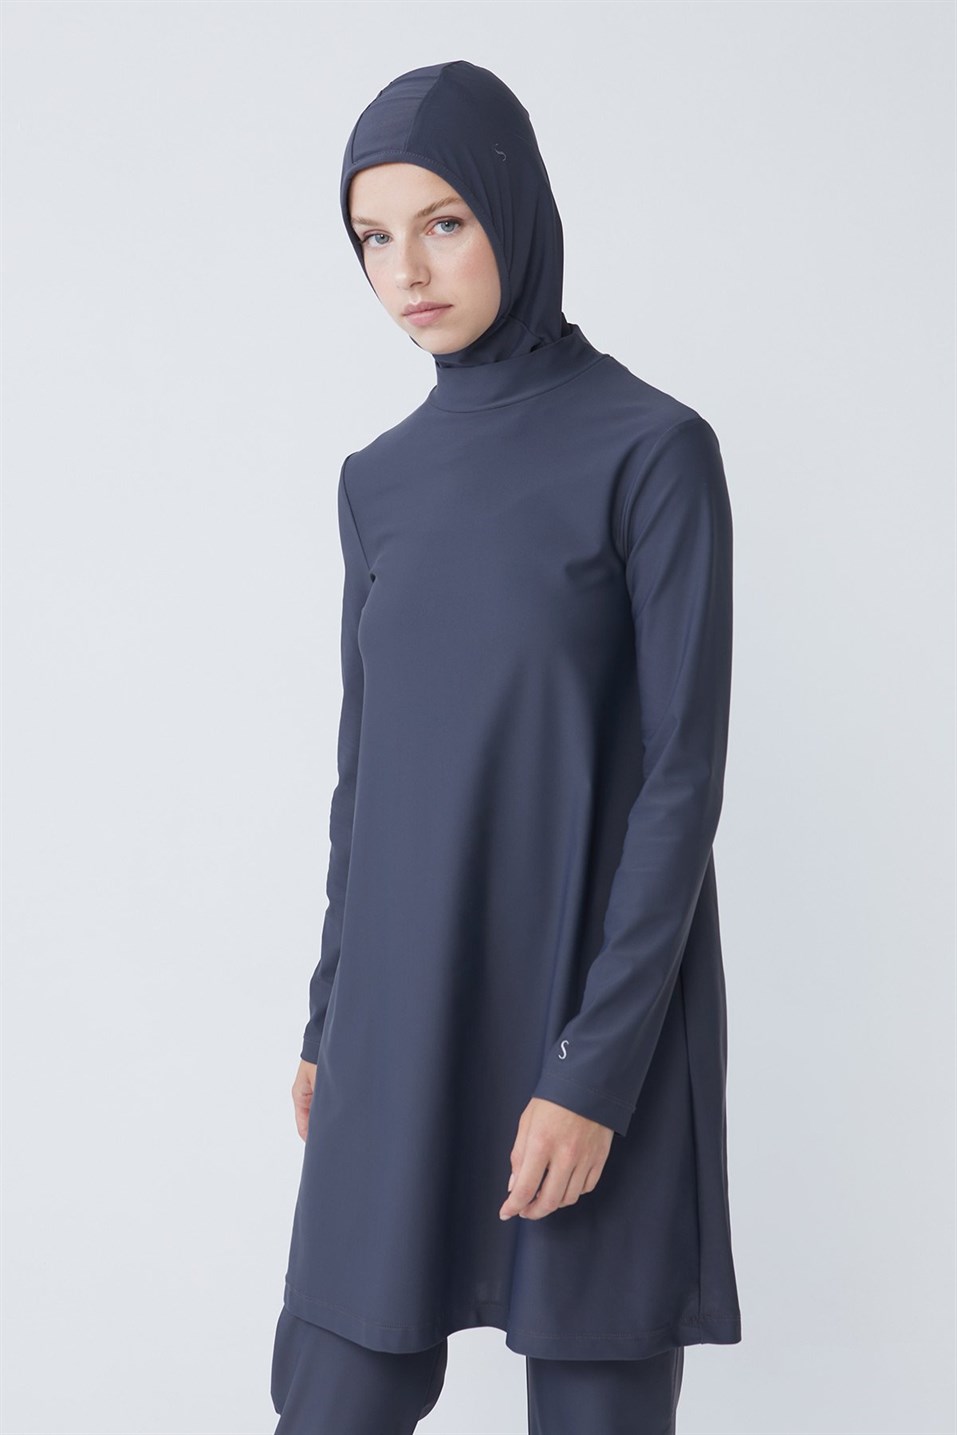 Anthracite Basic Elastane Hijab Swimsuit Tunic